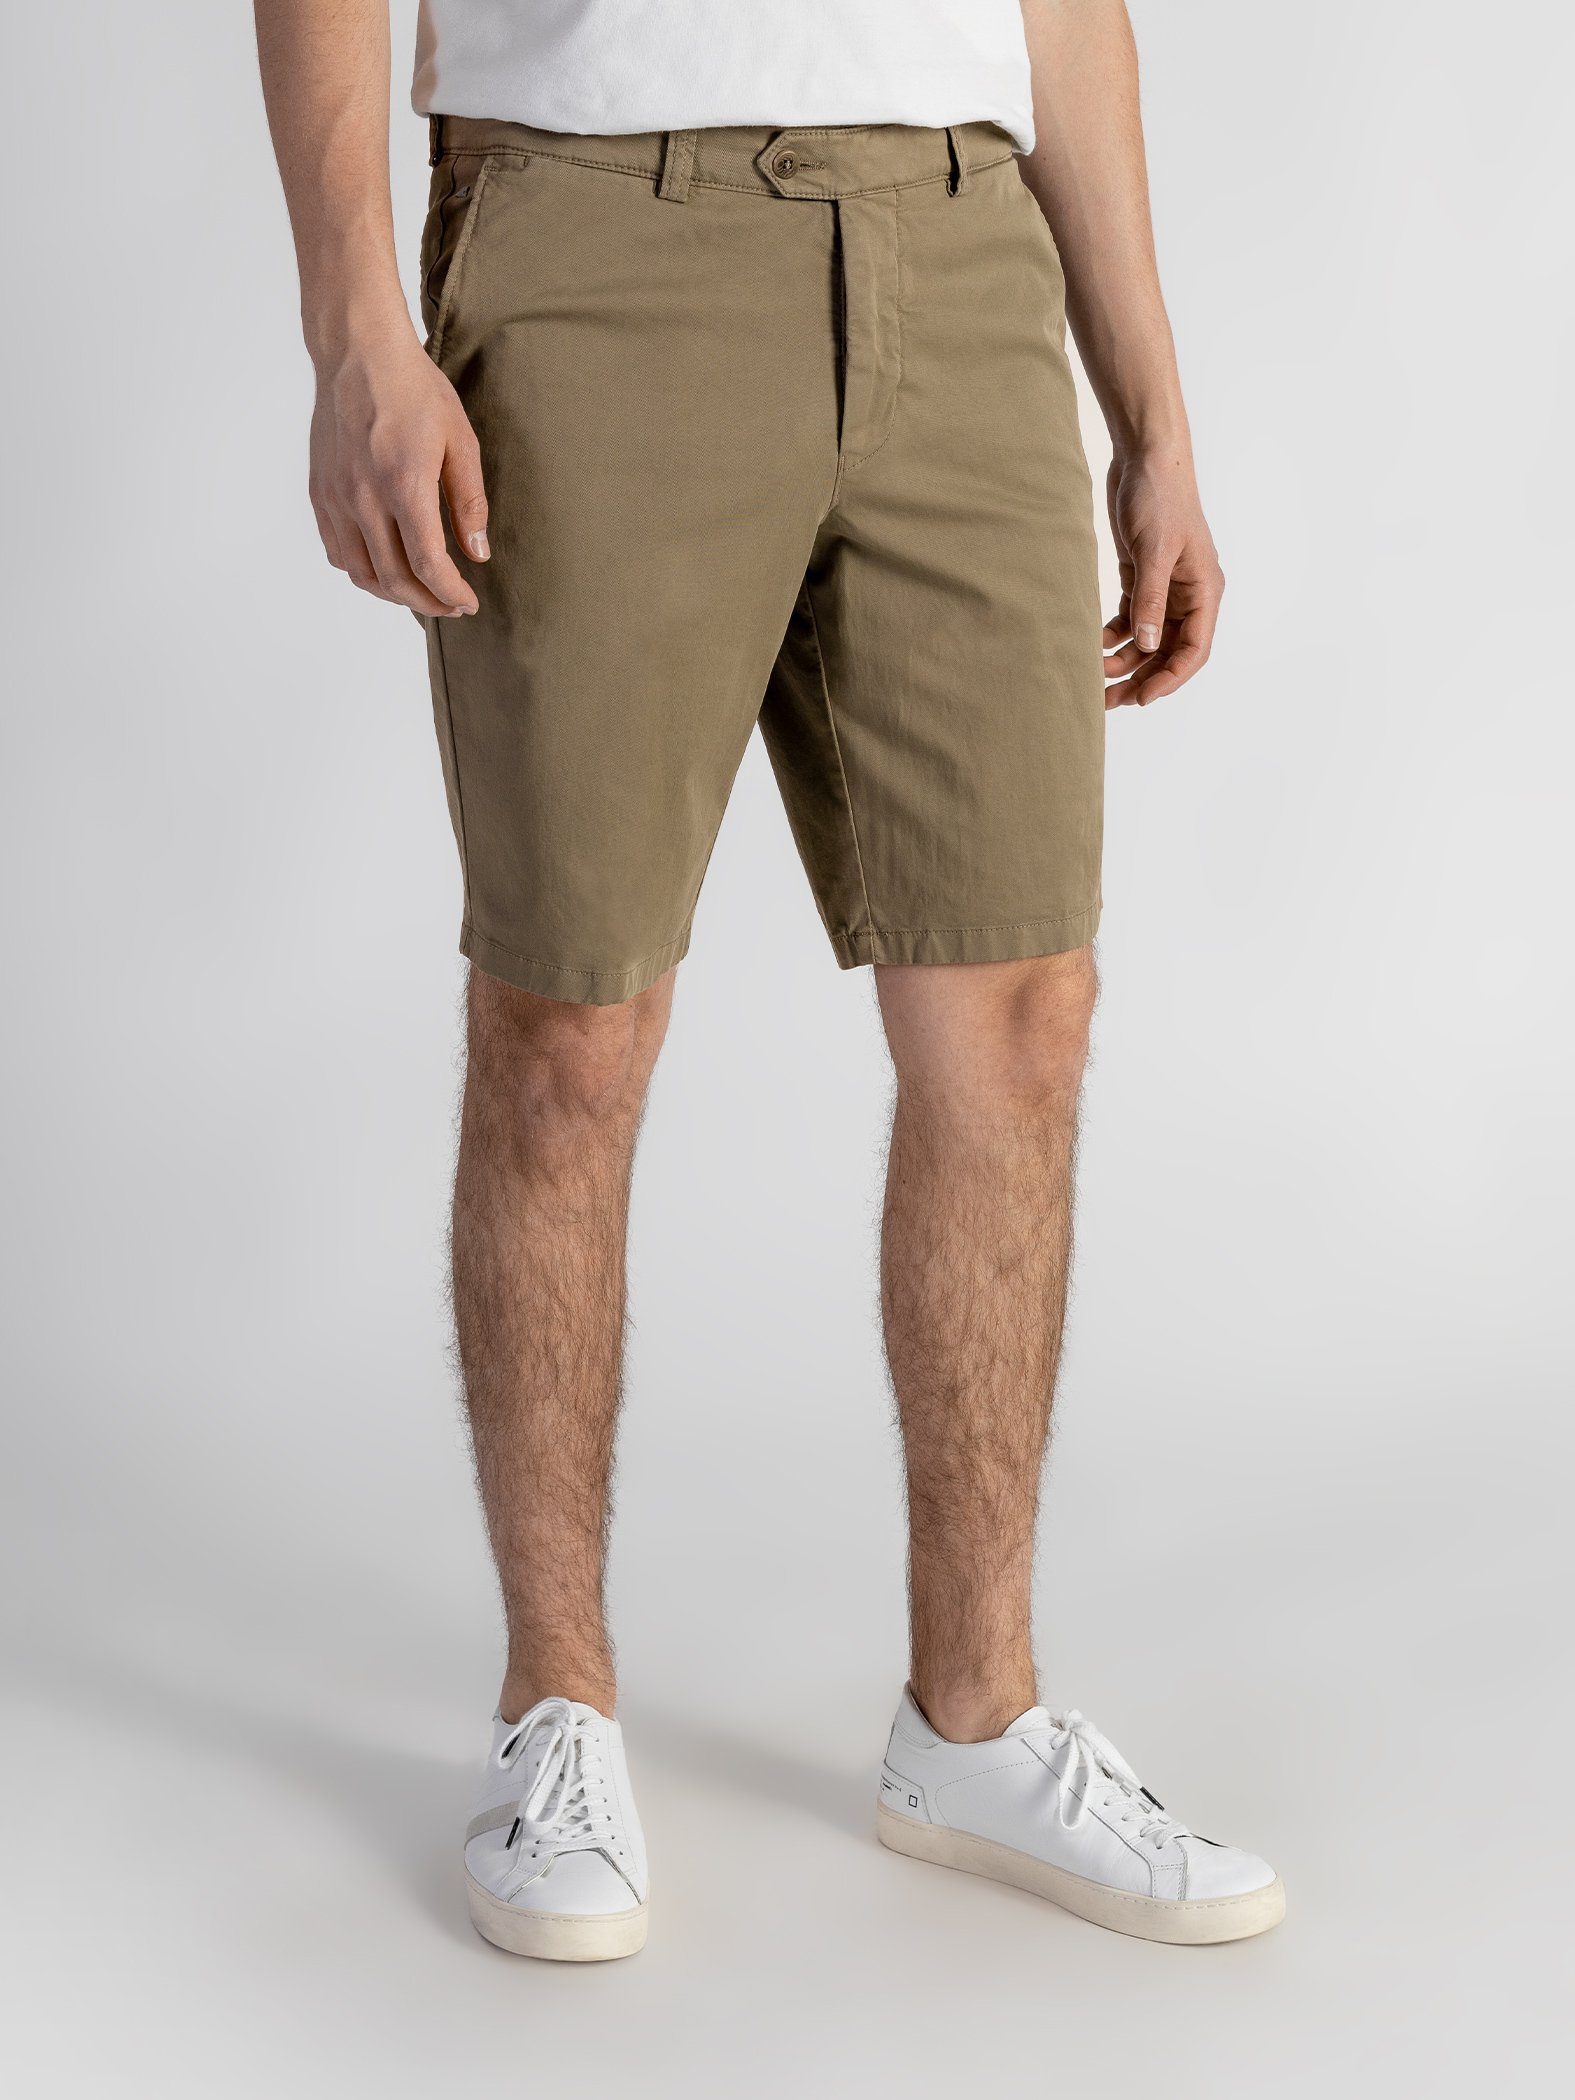 GOTS-zertifiziert Shorts Beige elastischem Farbauswahl, mit Shorts Bund, TwoMates